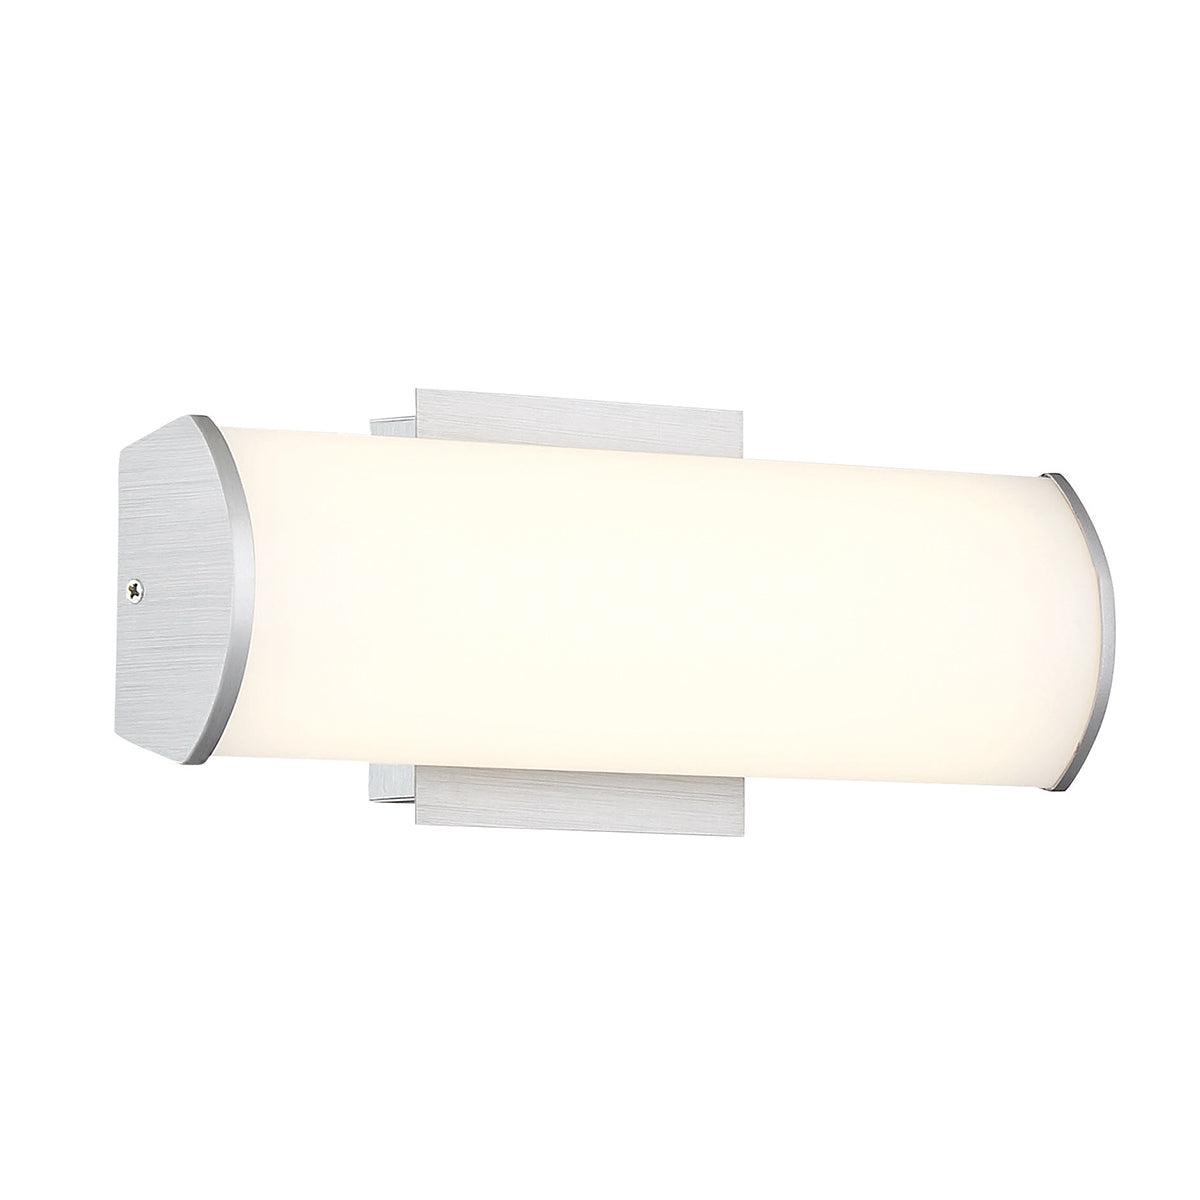 AIM Bathroom sconce Aluminum - 30188-013 INTEGRATED LED | EUROFASE